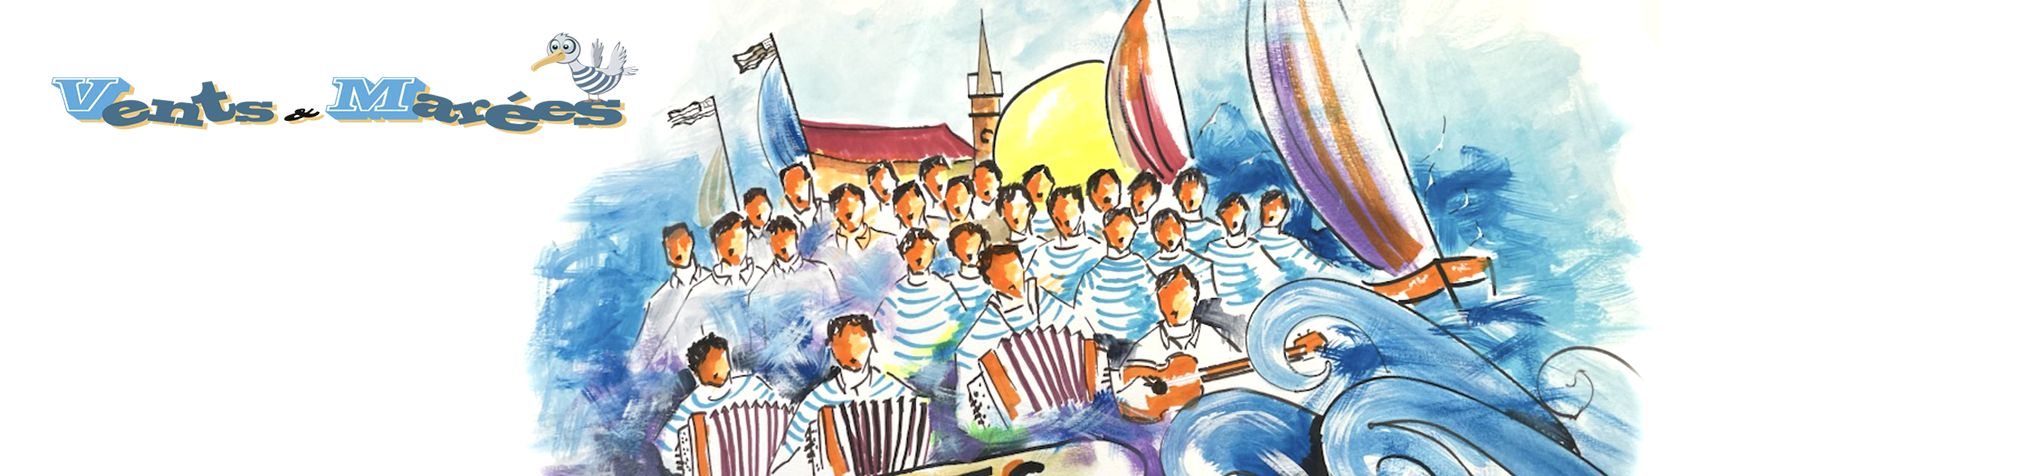 Vents et Marées, groupe de chants marins